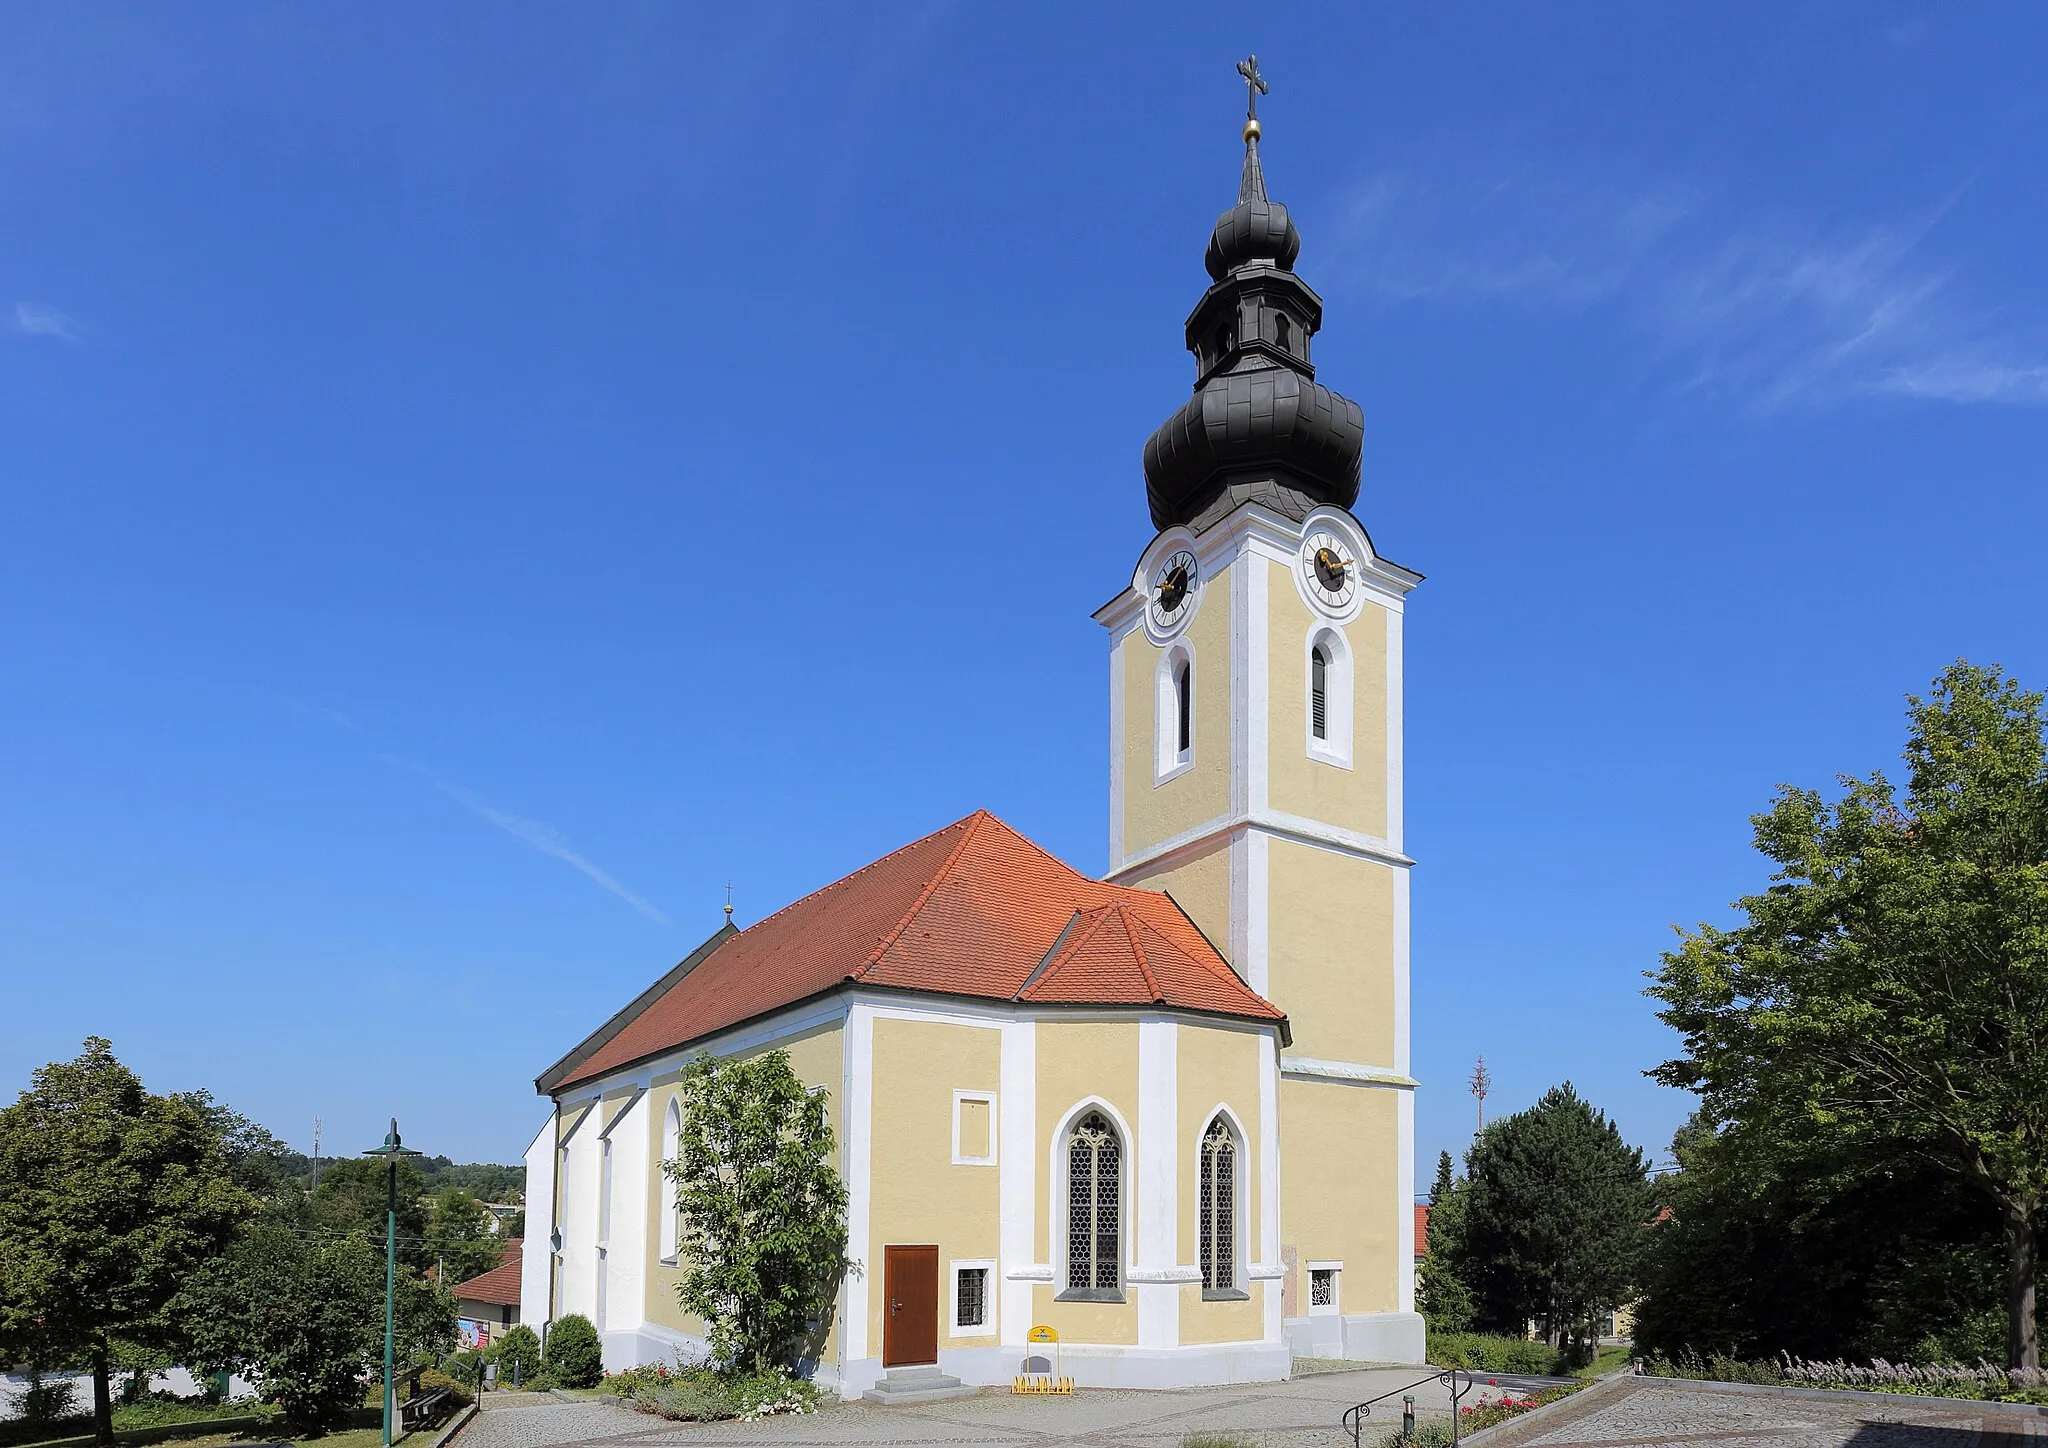 Photo showing: Katholische Pfarrkirche hl. Margarethe in der oberösterreichischen Marktgemeinde Prambachkirchen. Eine spätgotische Hallenkirche aus dem 1. Viertel des 16. Jahrhunderts. Der Turm mit dem aufgestetzen Zwiebelhelm wurde 1835 errichtet.